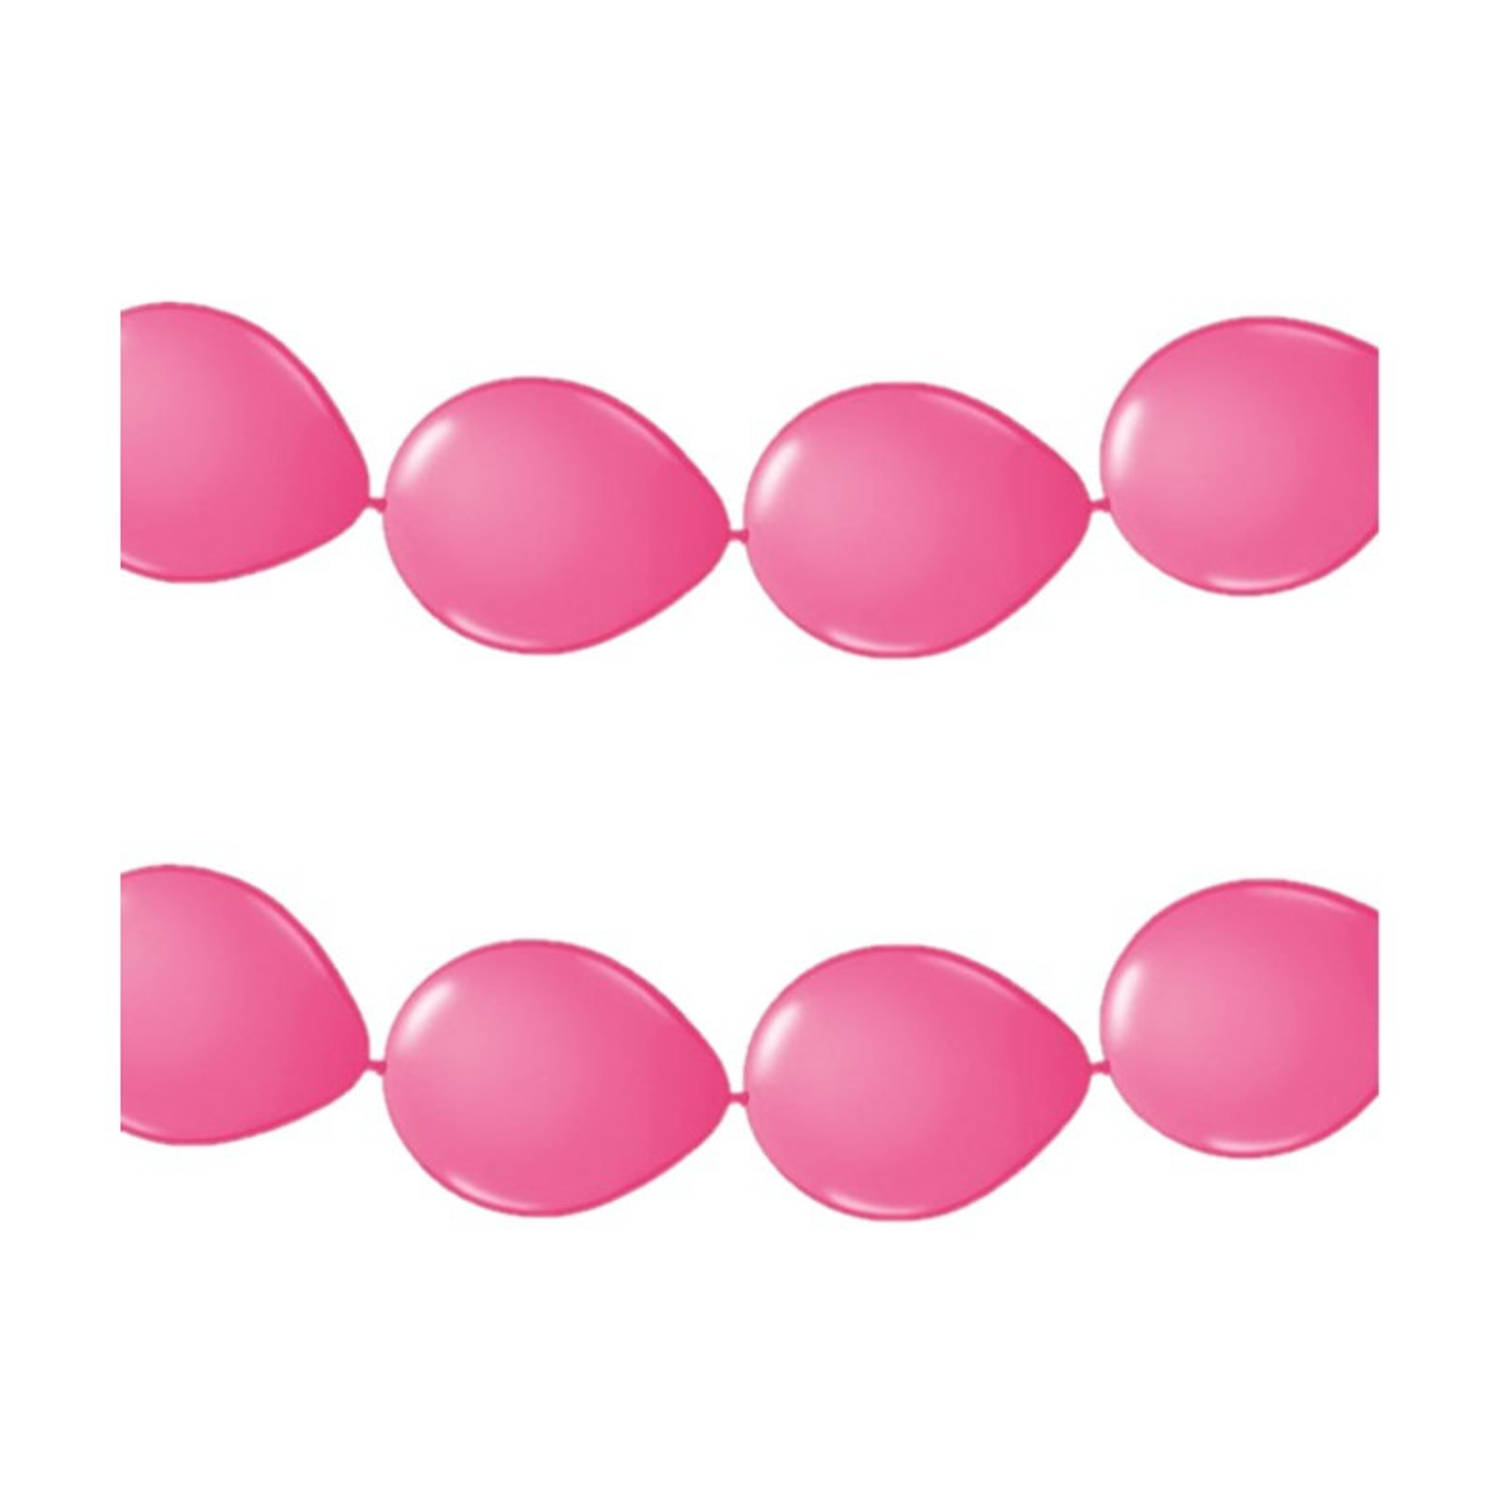 2x stuks ballonnen verjaardag feest slinger roze 3 meter - Ballonnen